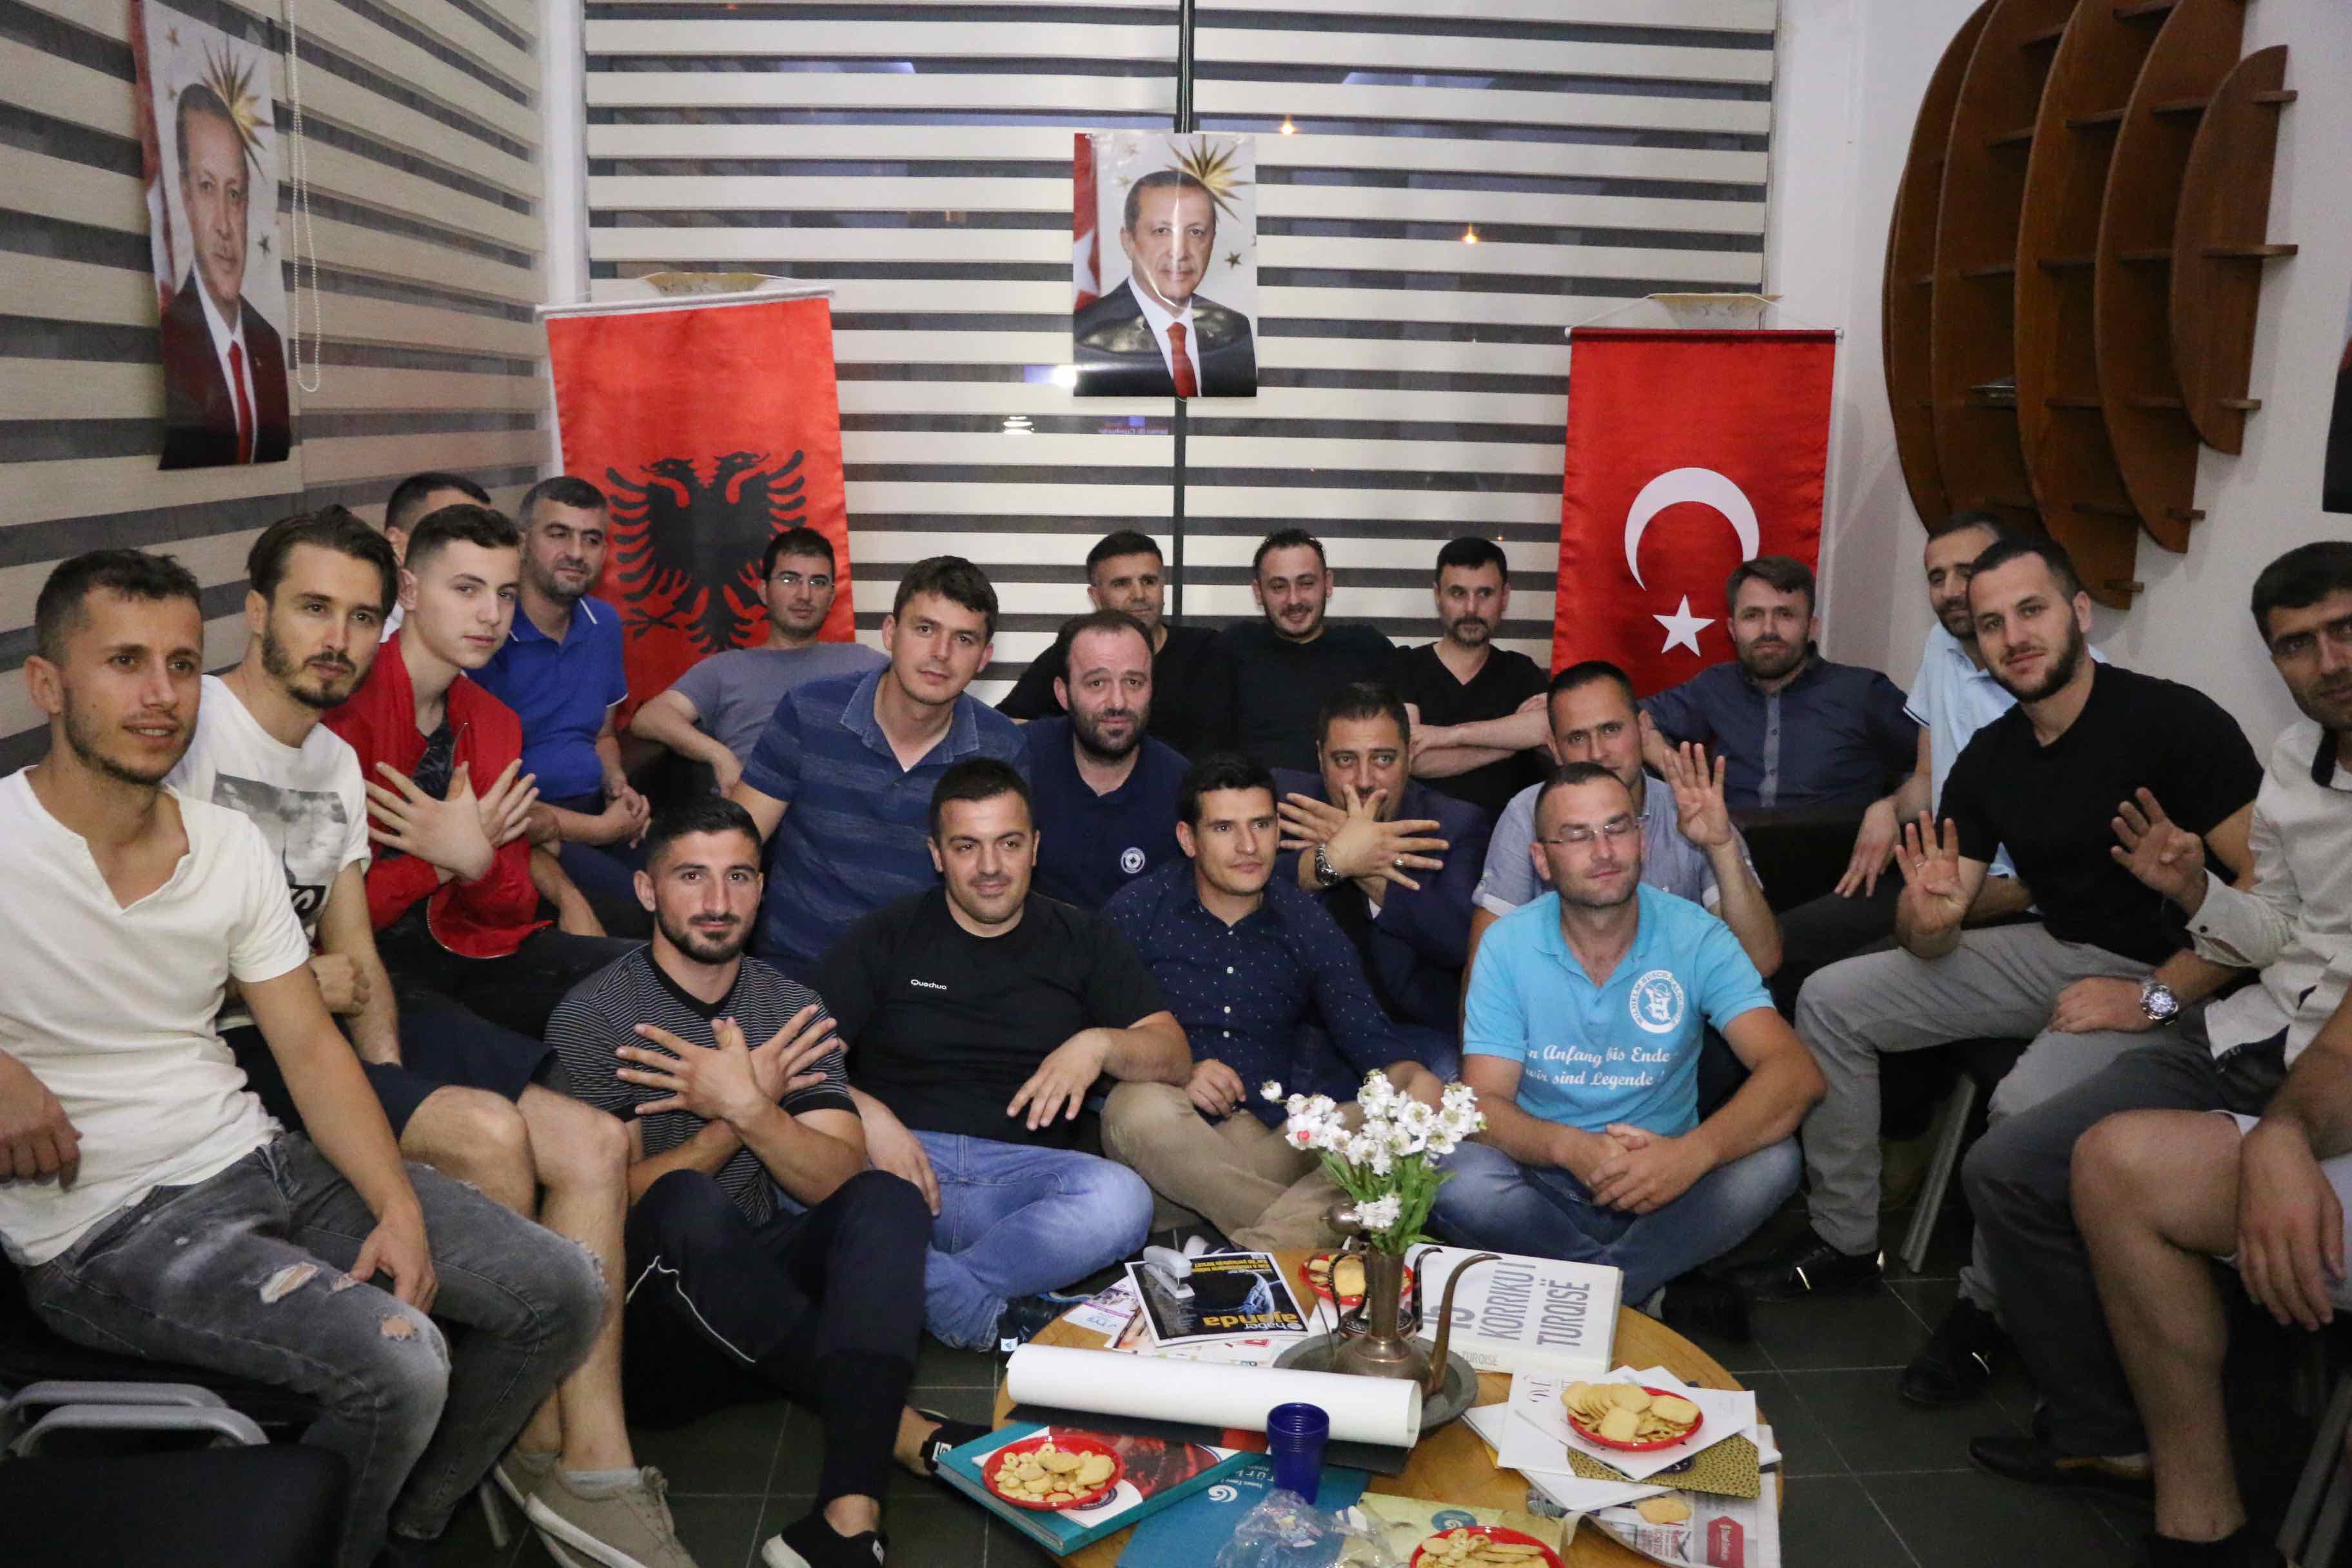 Qytetarët në kryeqytetin e Shqipërisë, Tiranë, kanë festuar suksesin e arritur nga presidenti turk, Recep Tayyip Erdoğan, i cili fitoi zgjedhjet e mbajtura sot në Turqi. Në disa lokale qytetarët kanë festuar teksa ndiqnin edhe rezultatet e zgjedhjeve në Turqi. ( Olsi Shehu - Anadolu Agency )